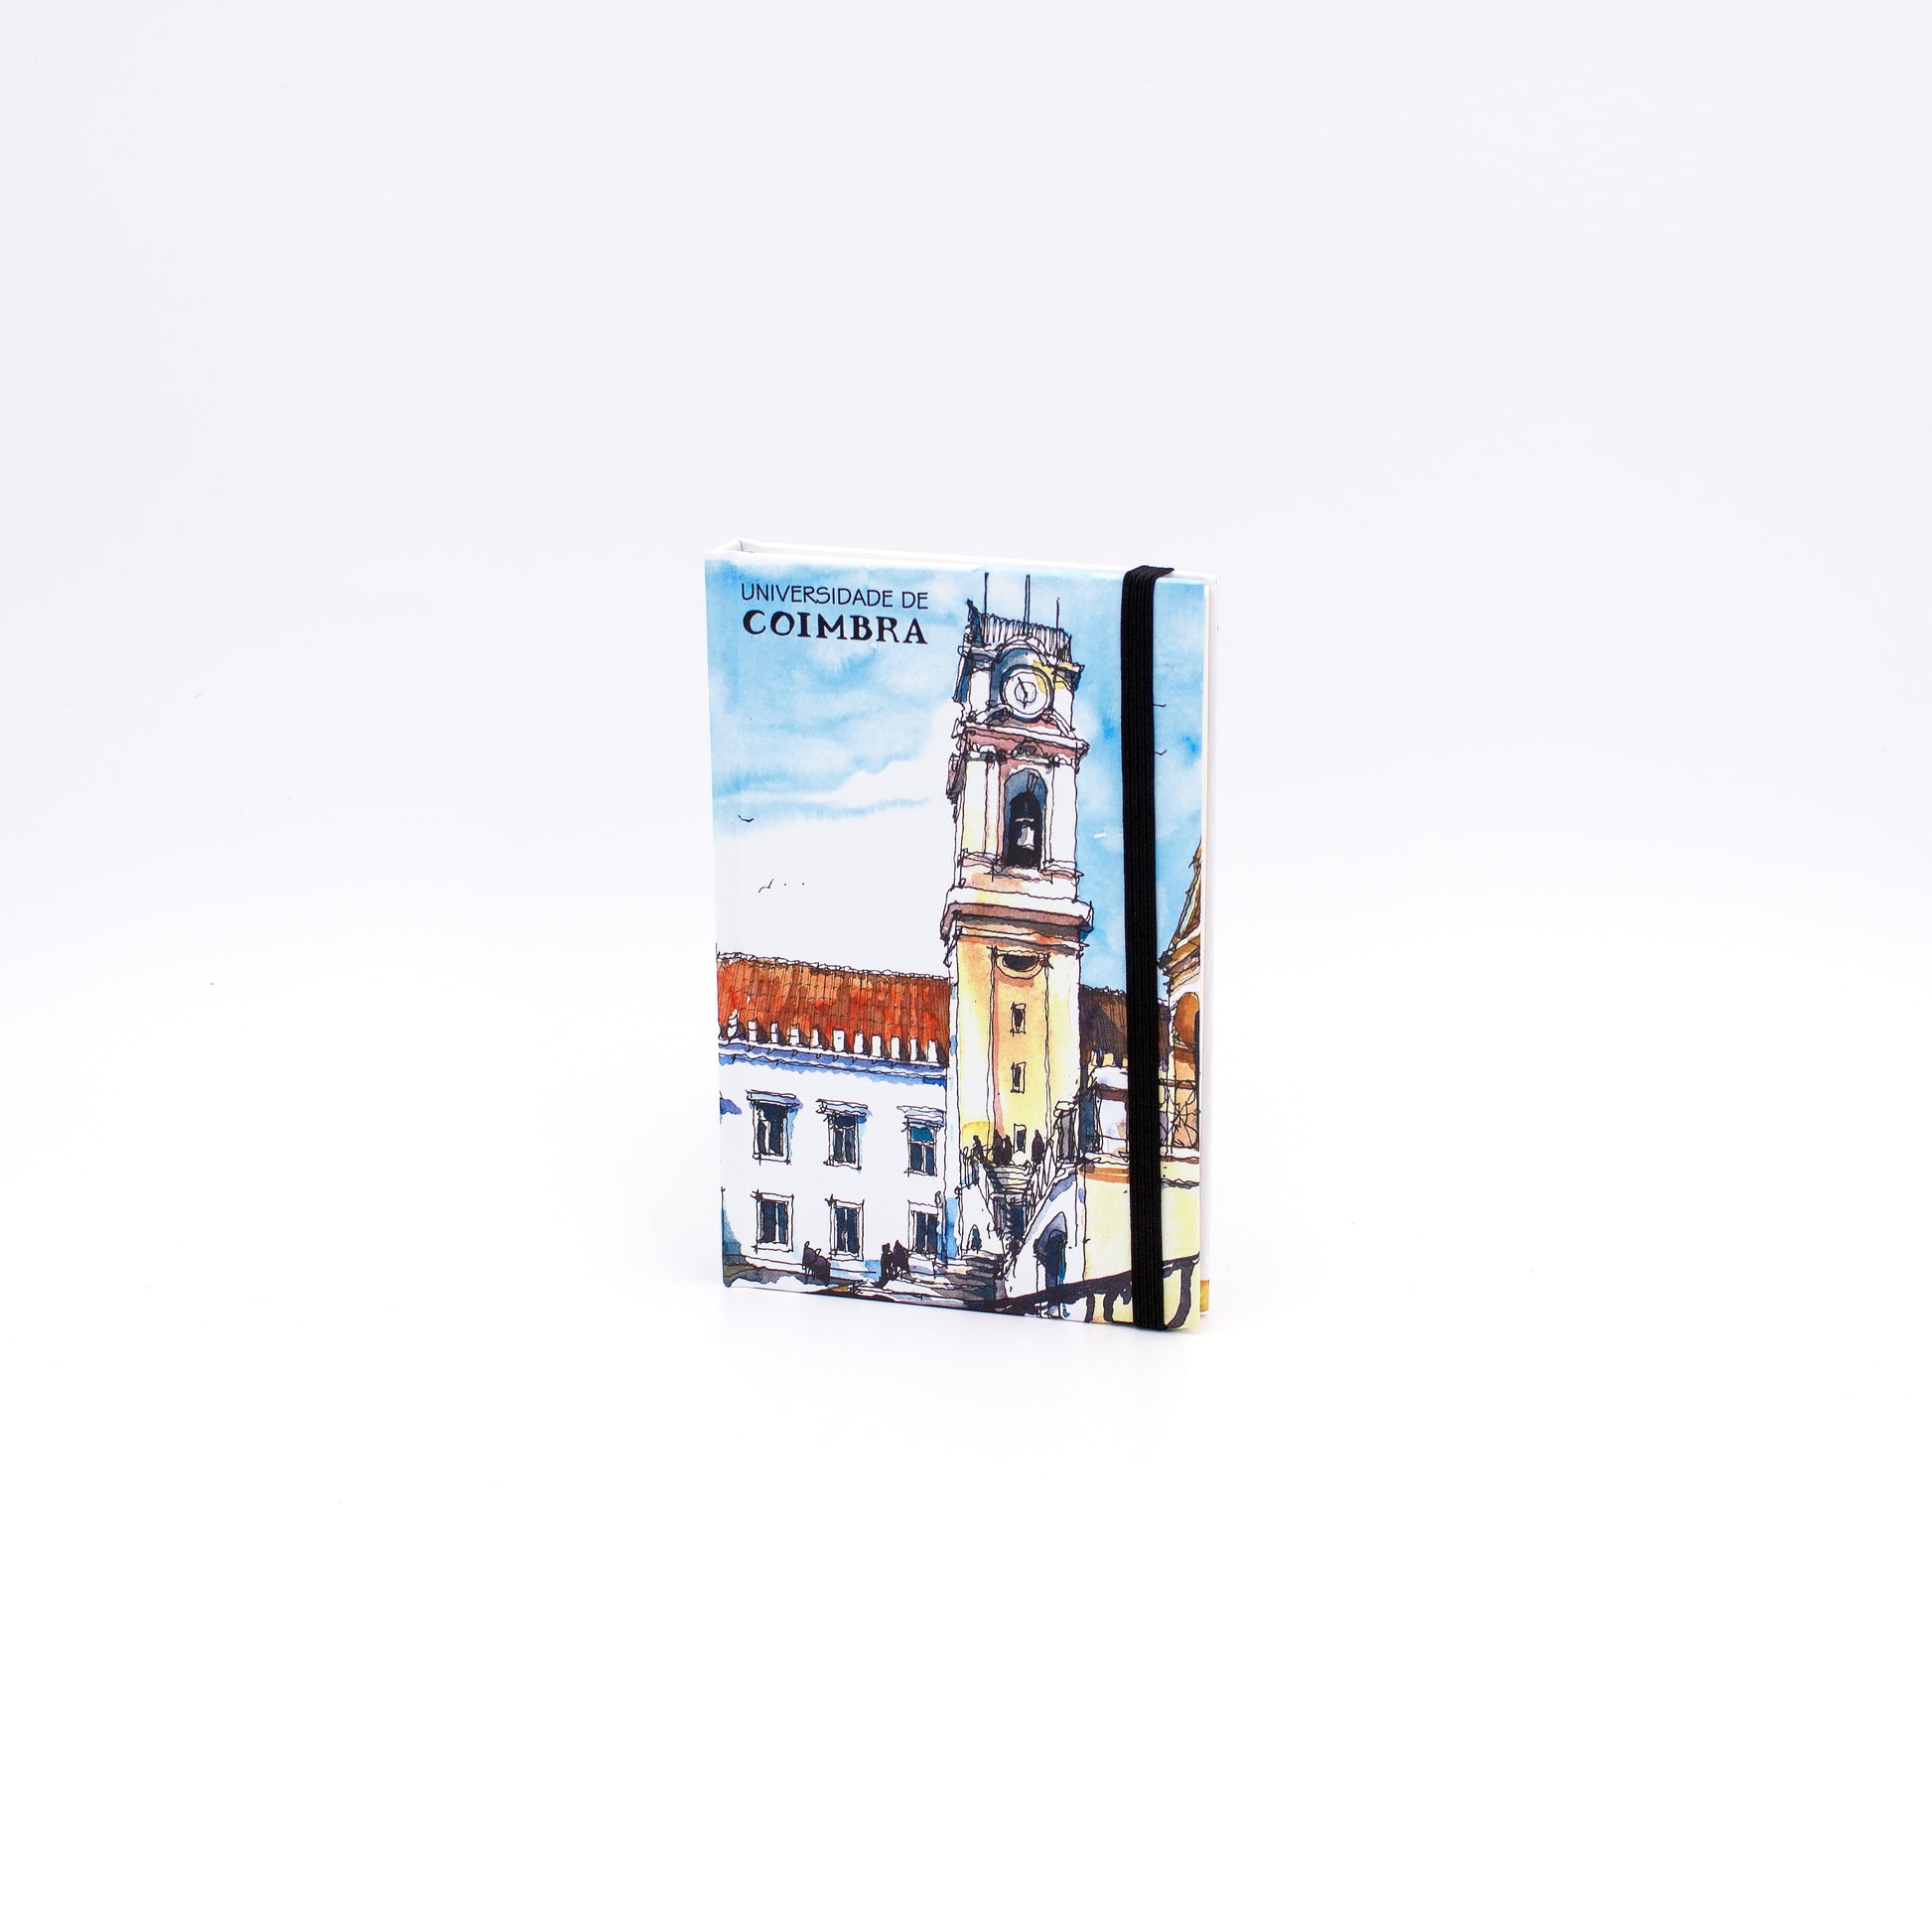 Bloco de Notas A6, com folhas lisas e uma belíssima ilustração da Torre da Universidade de Coimbra, criada pelo talentoso artista Pedro Alves.&nbsp;